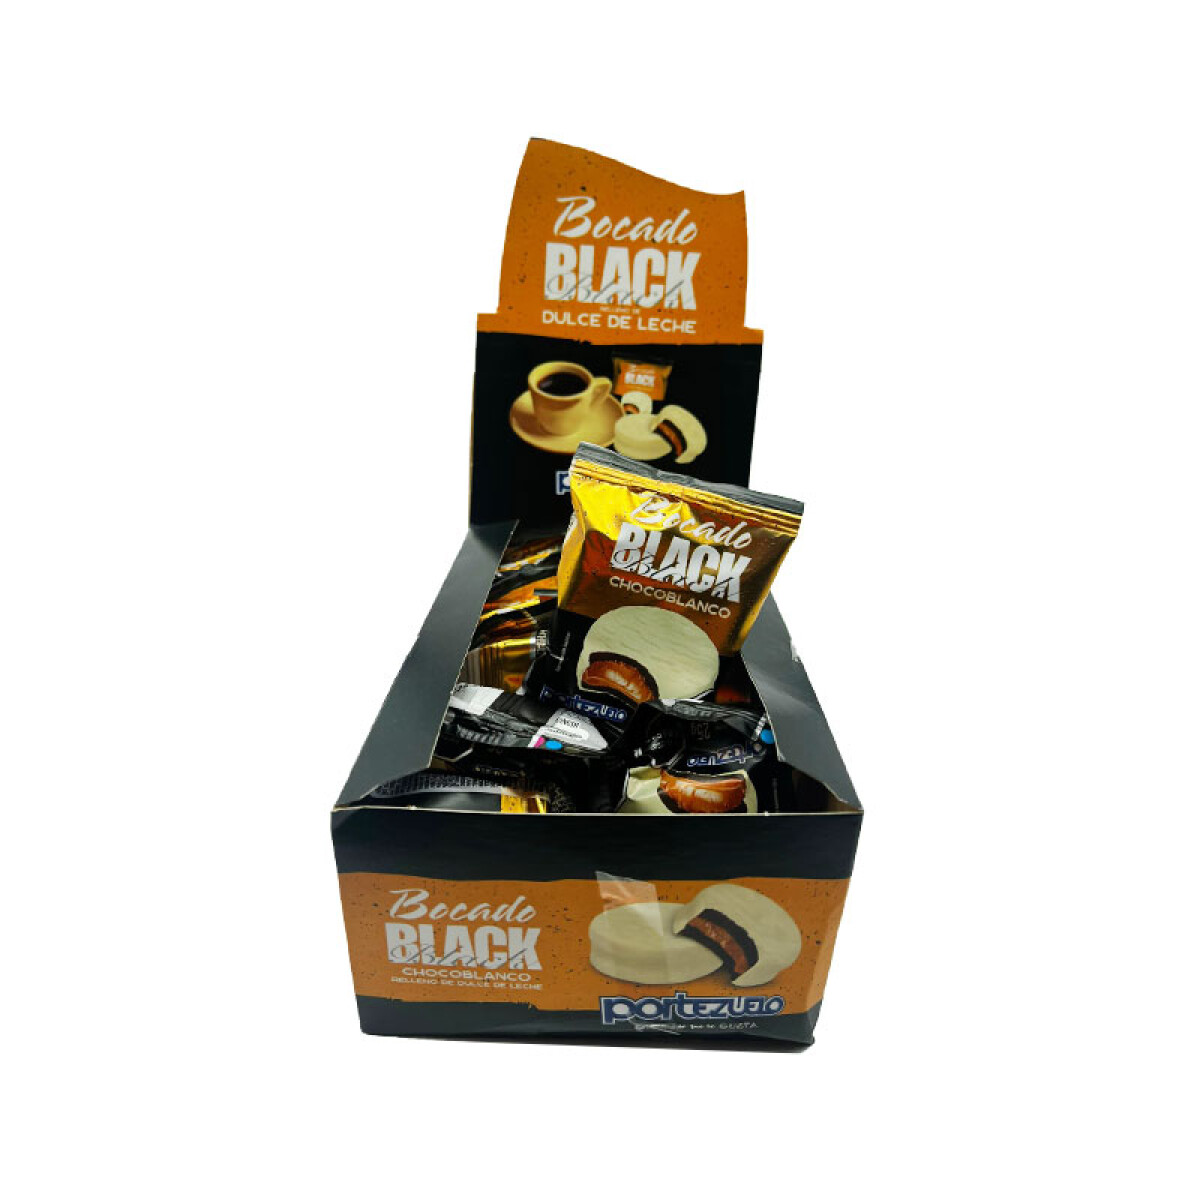 Bocado Black PORTEZUELO (Display 14 Pcs) - Chocolate Blanco y Dulce de Leche 